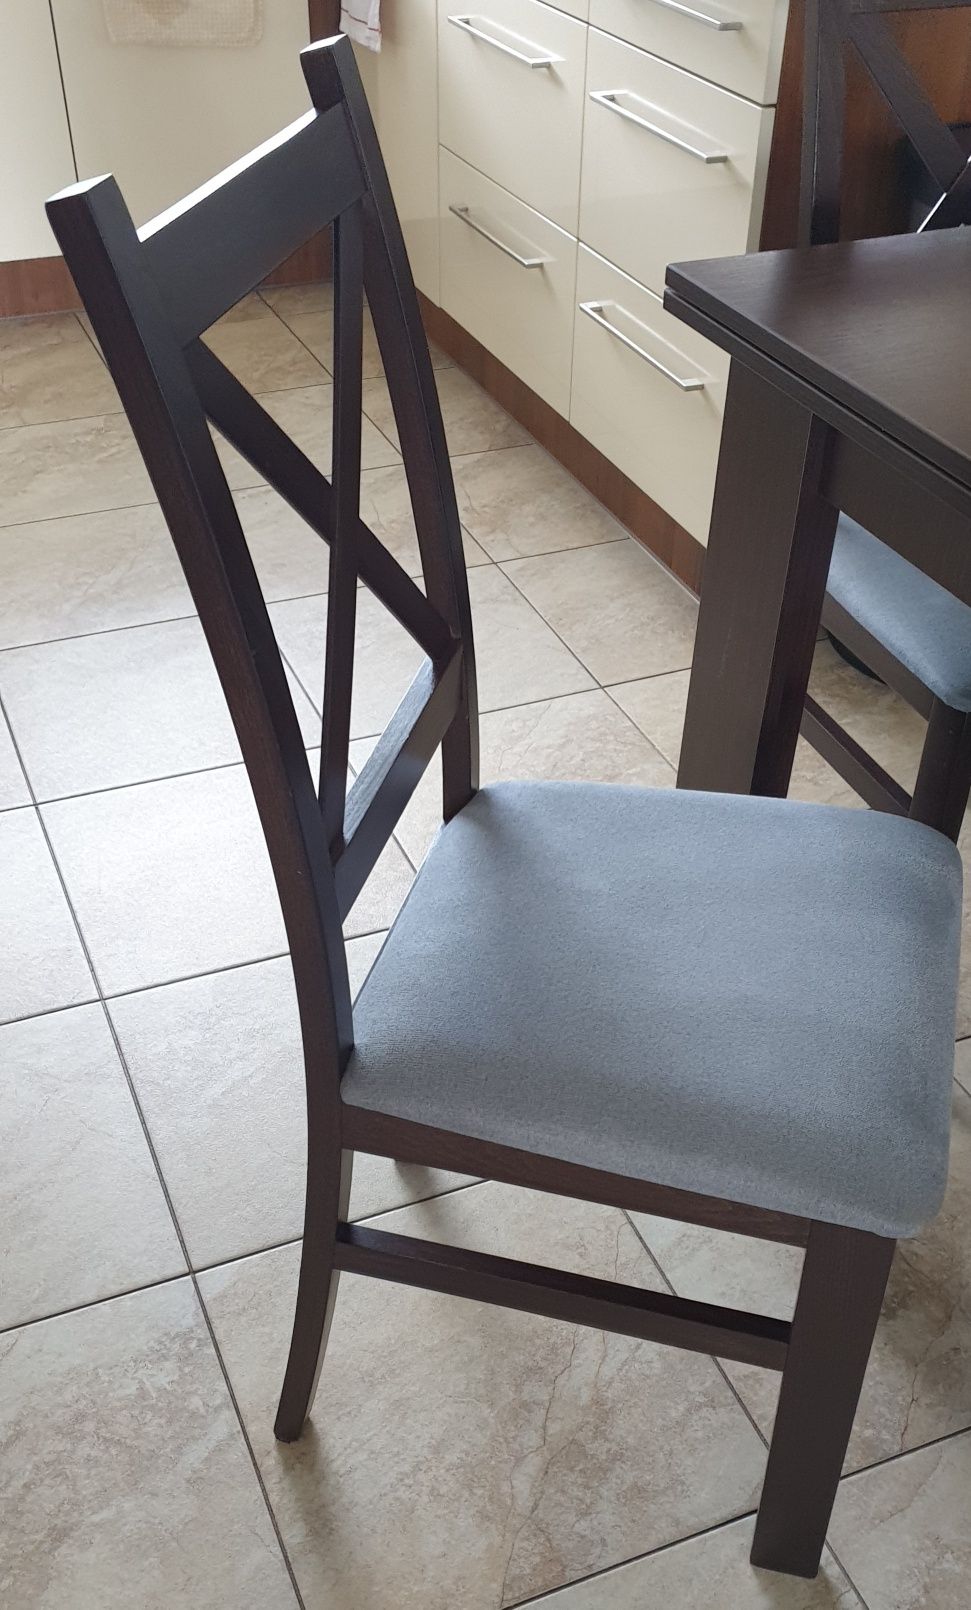 Stół kuchenny i 4 krzesła